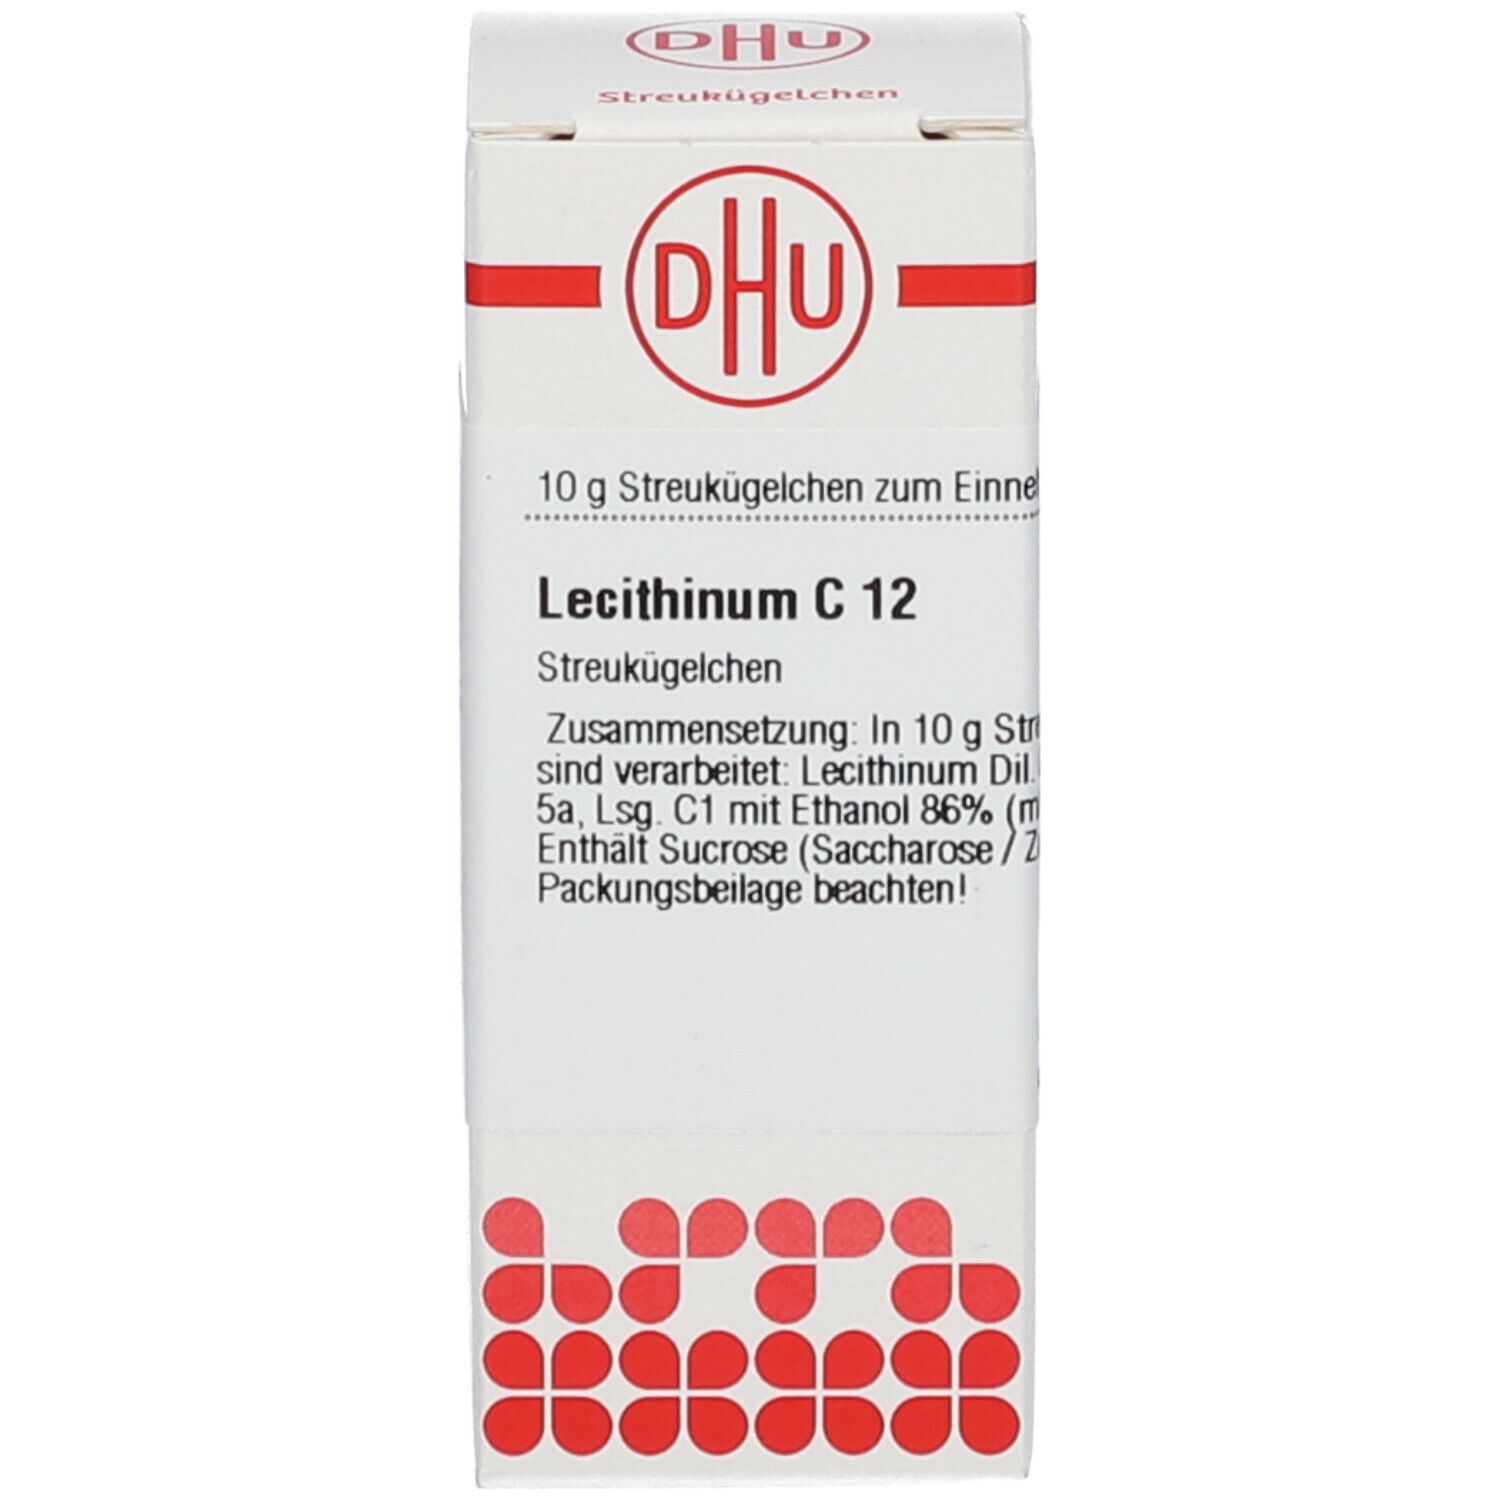 DHU Lecithinum C12